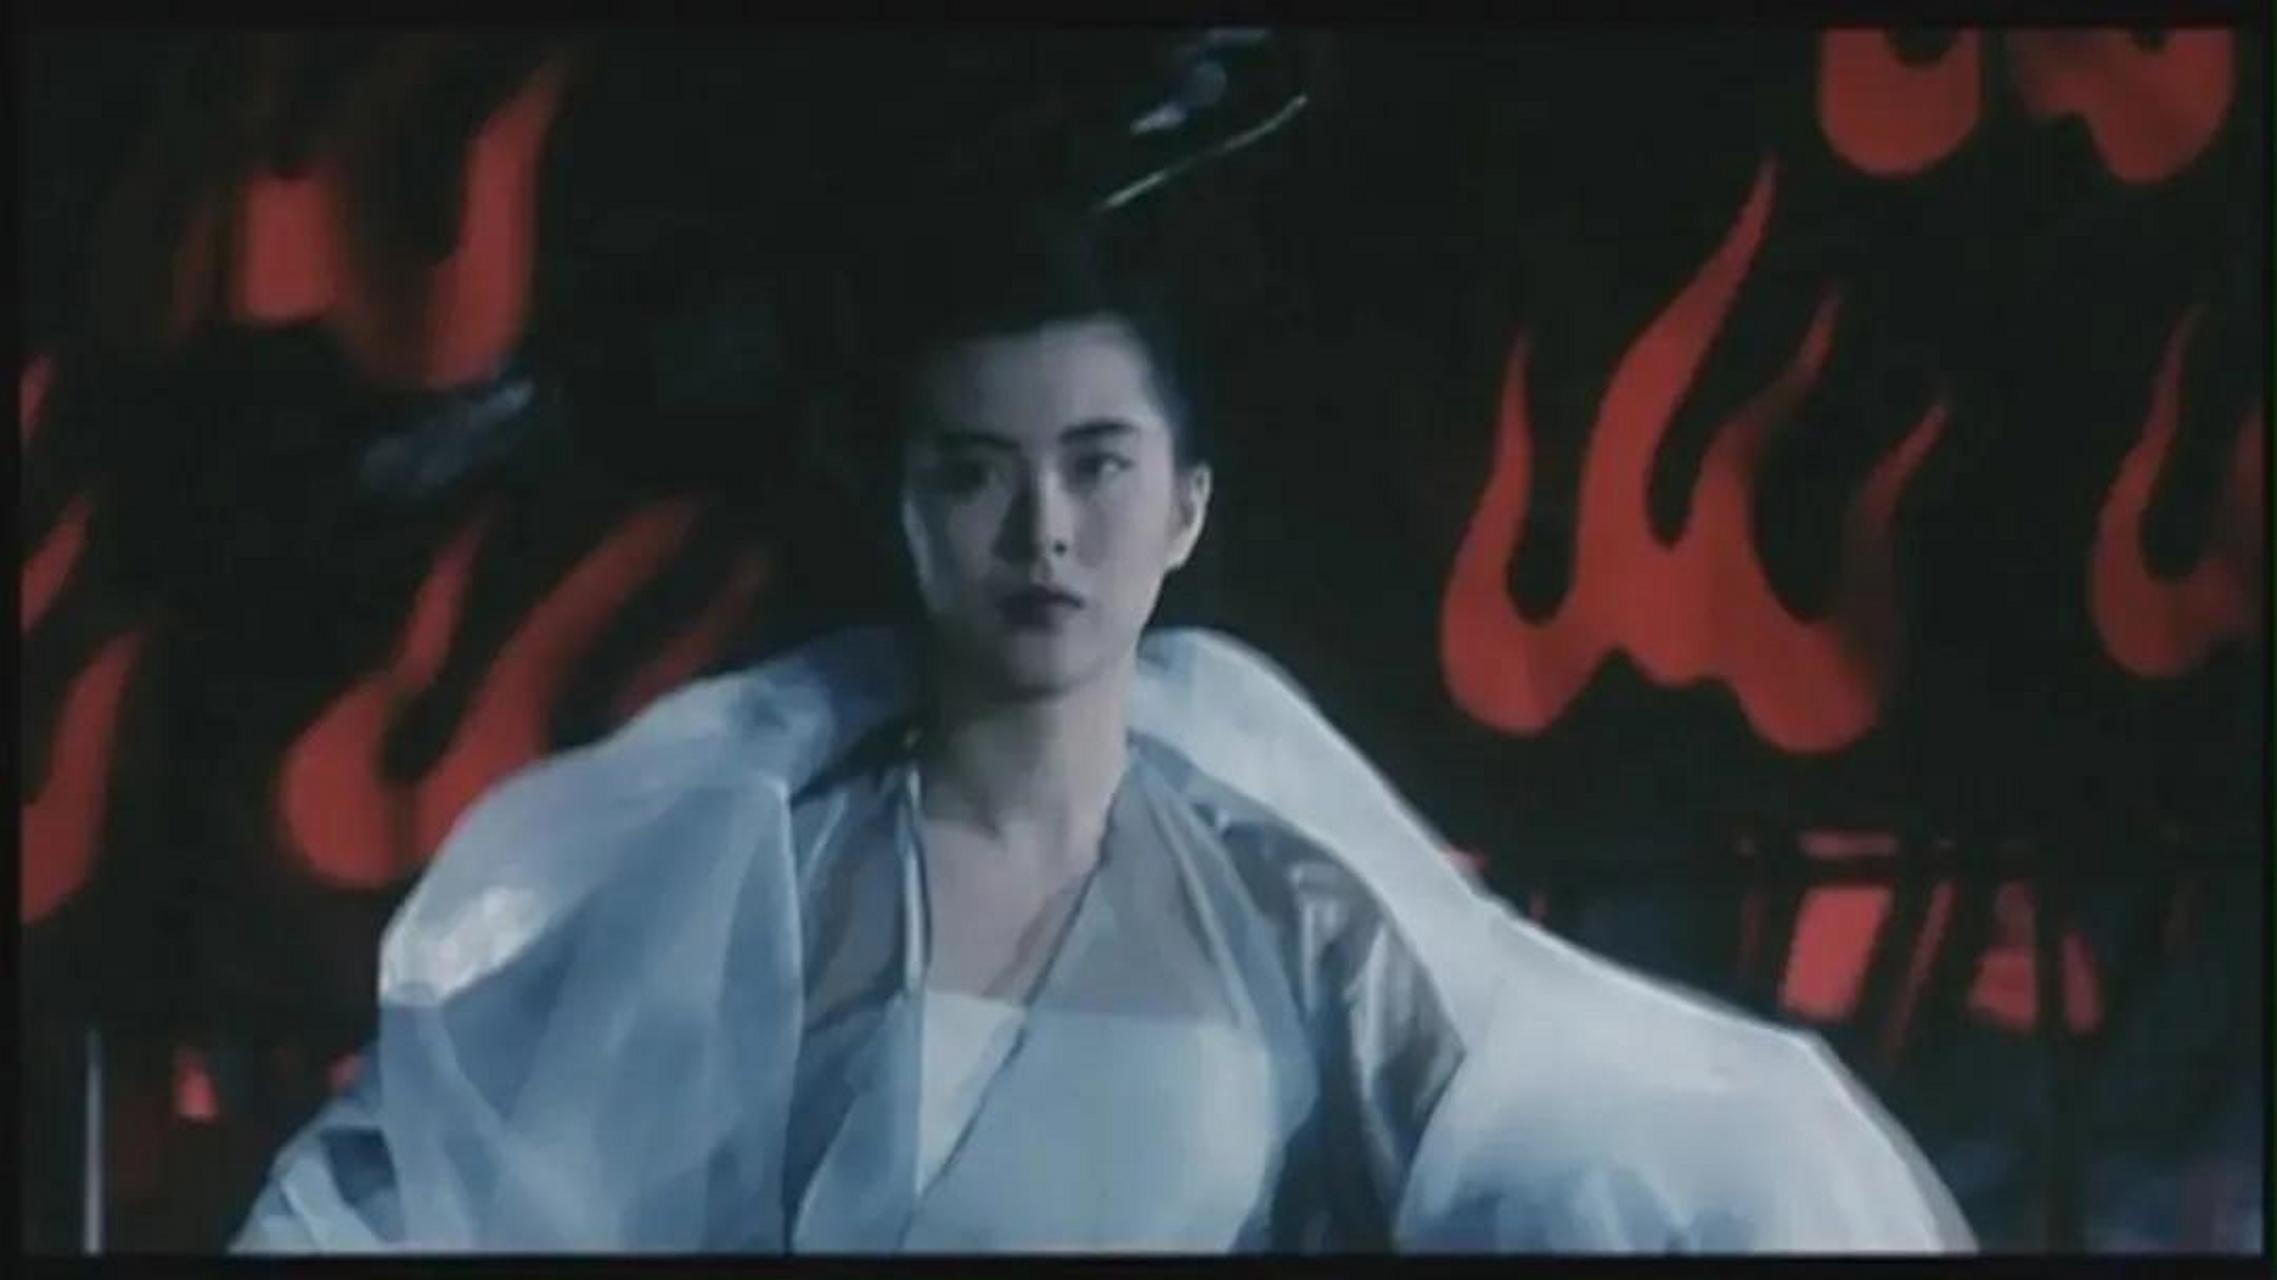 《千人斩》是一部值得一看的经典电影,玉残花也成为了王祖贤演艺生涯